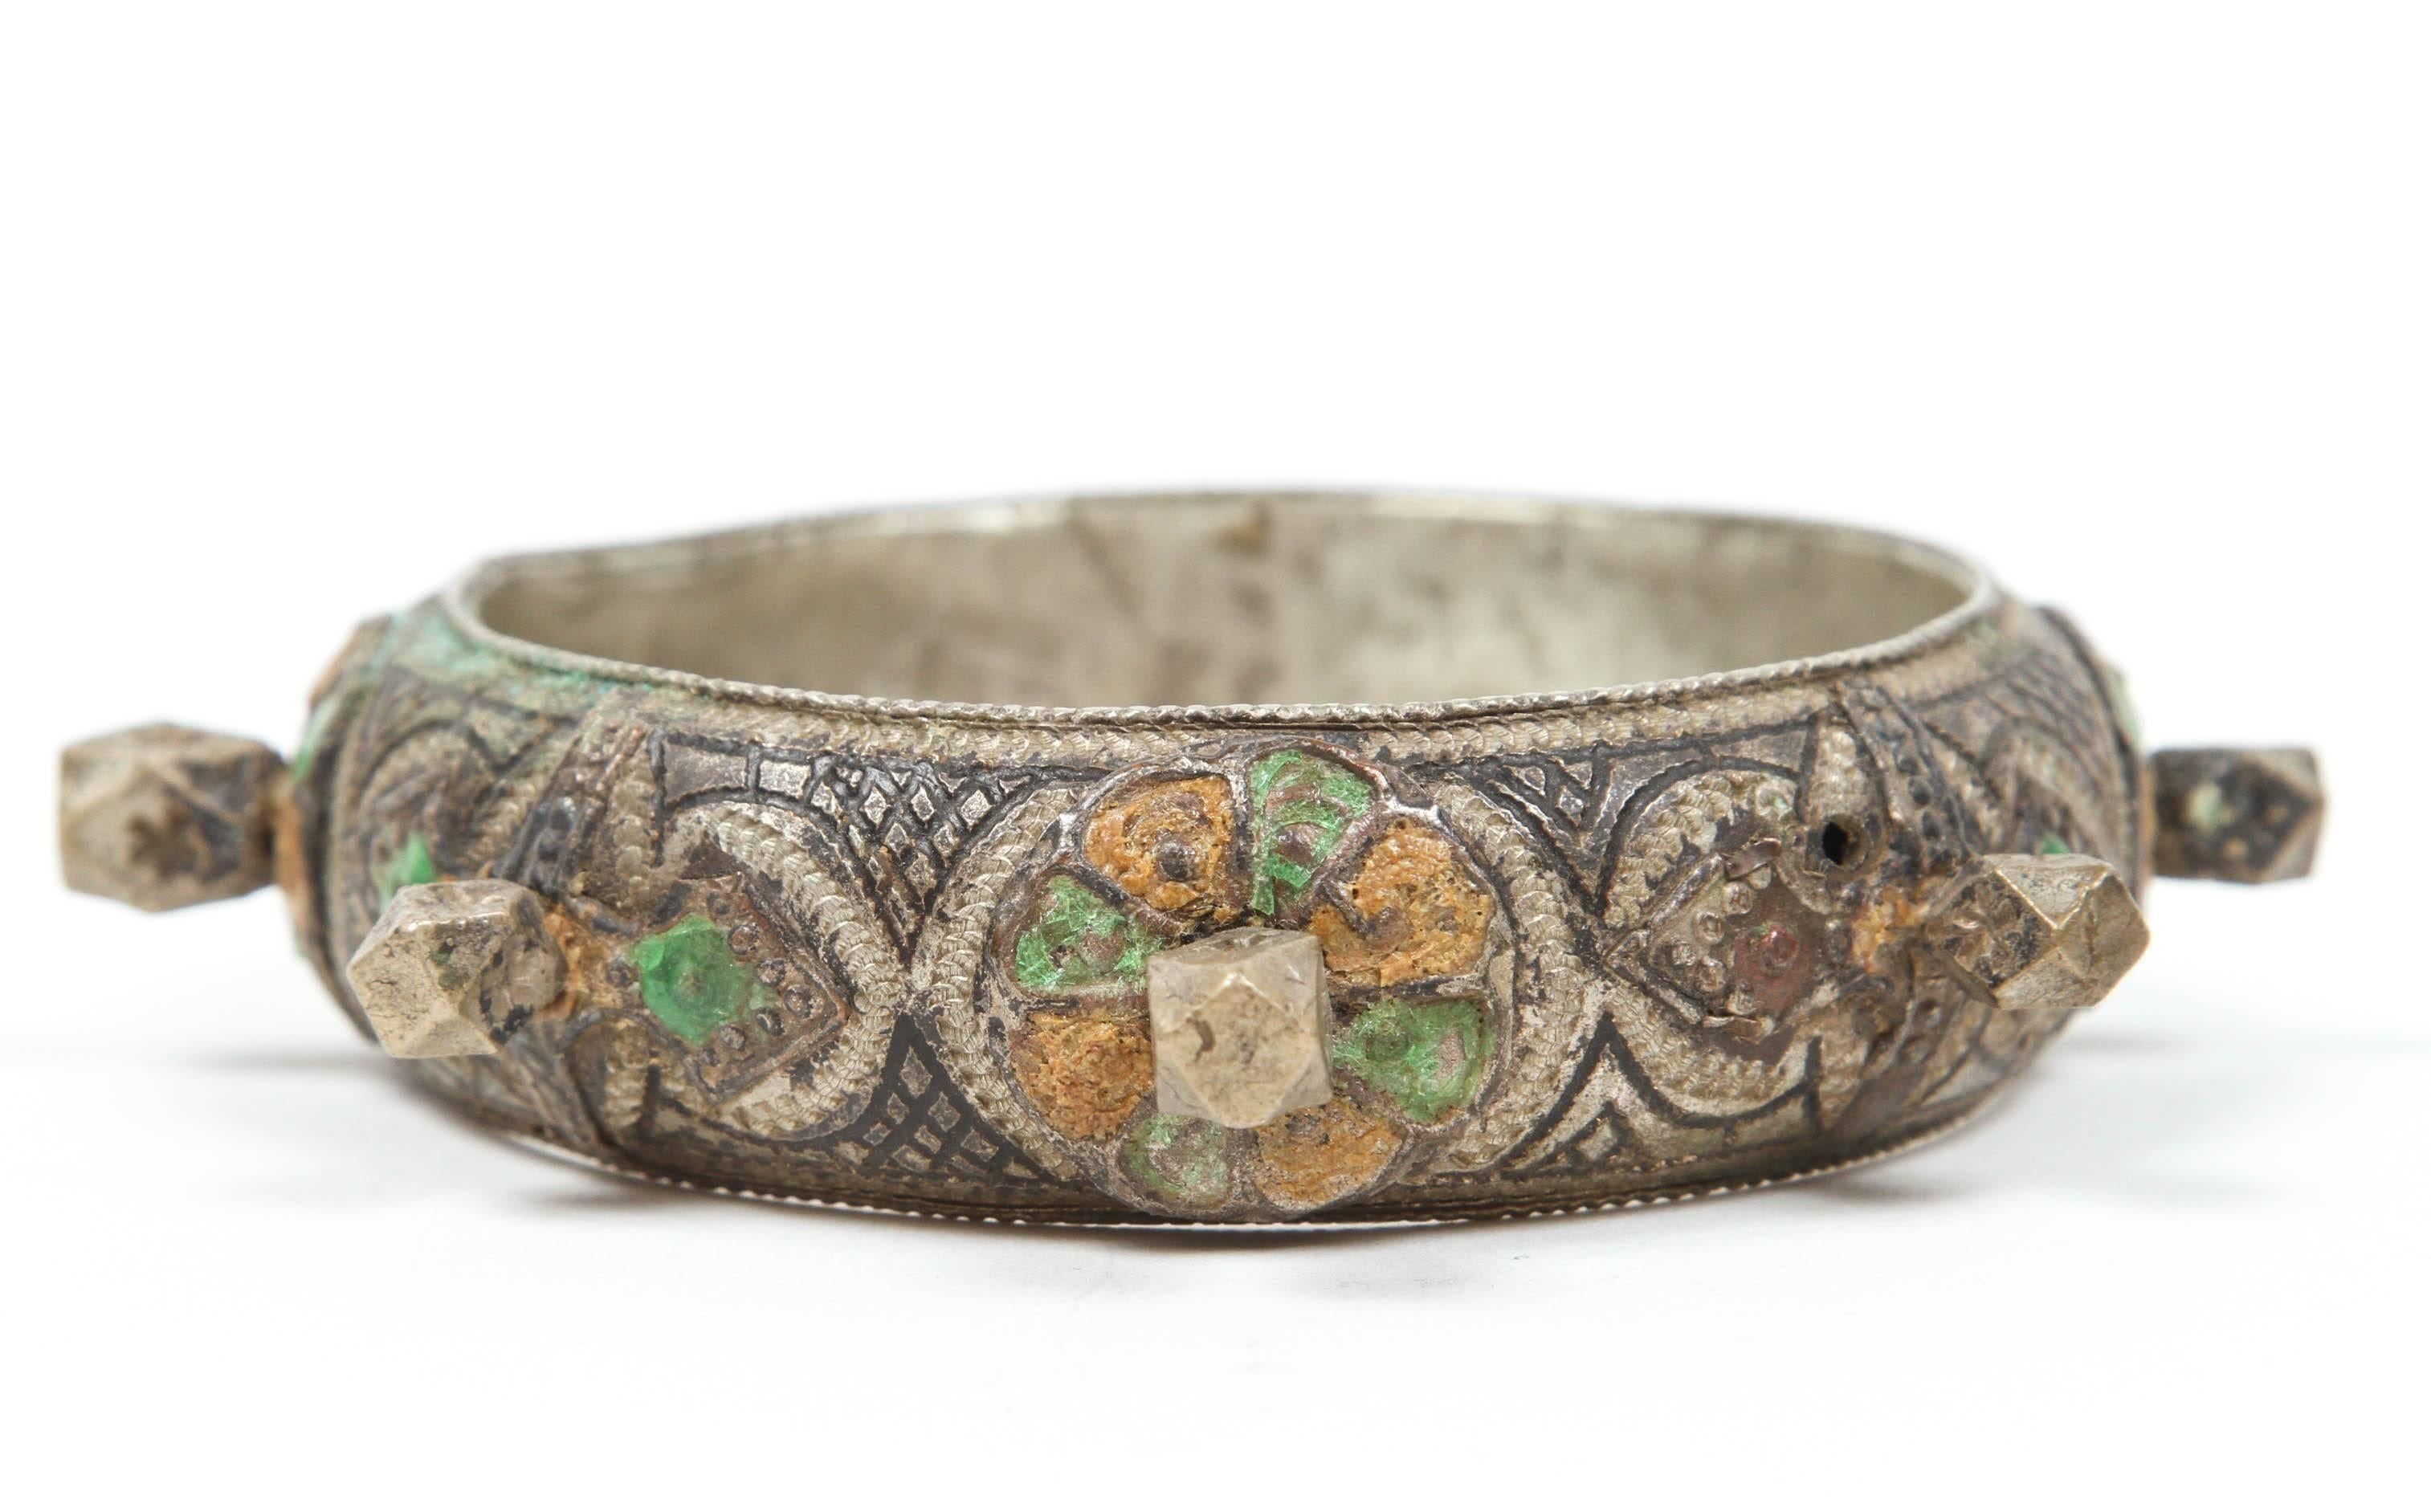 Ein handgefertigtes ethnisches Armband aus den 1920er Jahren von Berberfrauen aus Marokko.
Frauen tragen diese Art von Armbändern und Silberschmuck zu besonderen Anlässen und Hochzeiten. 
Silber, aber nicht in der Qualität von Sterling.
Reich